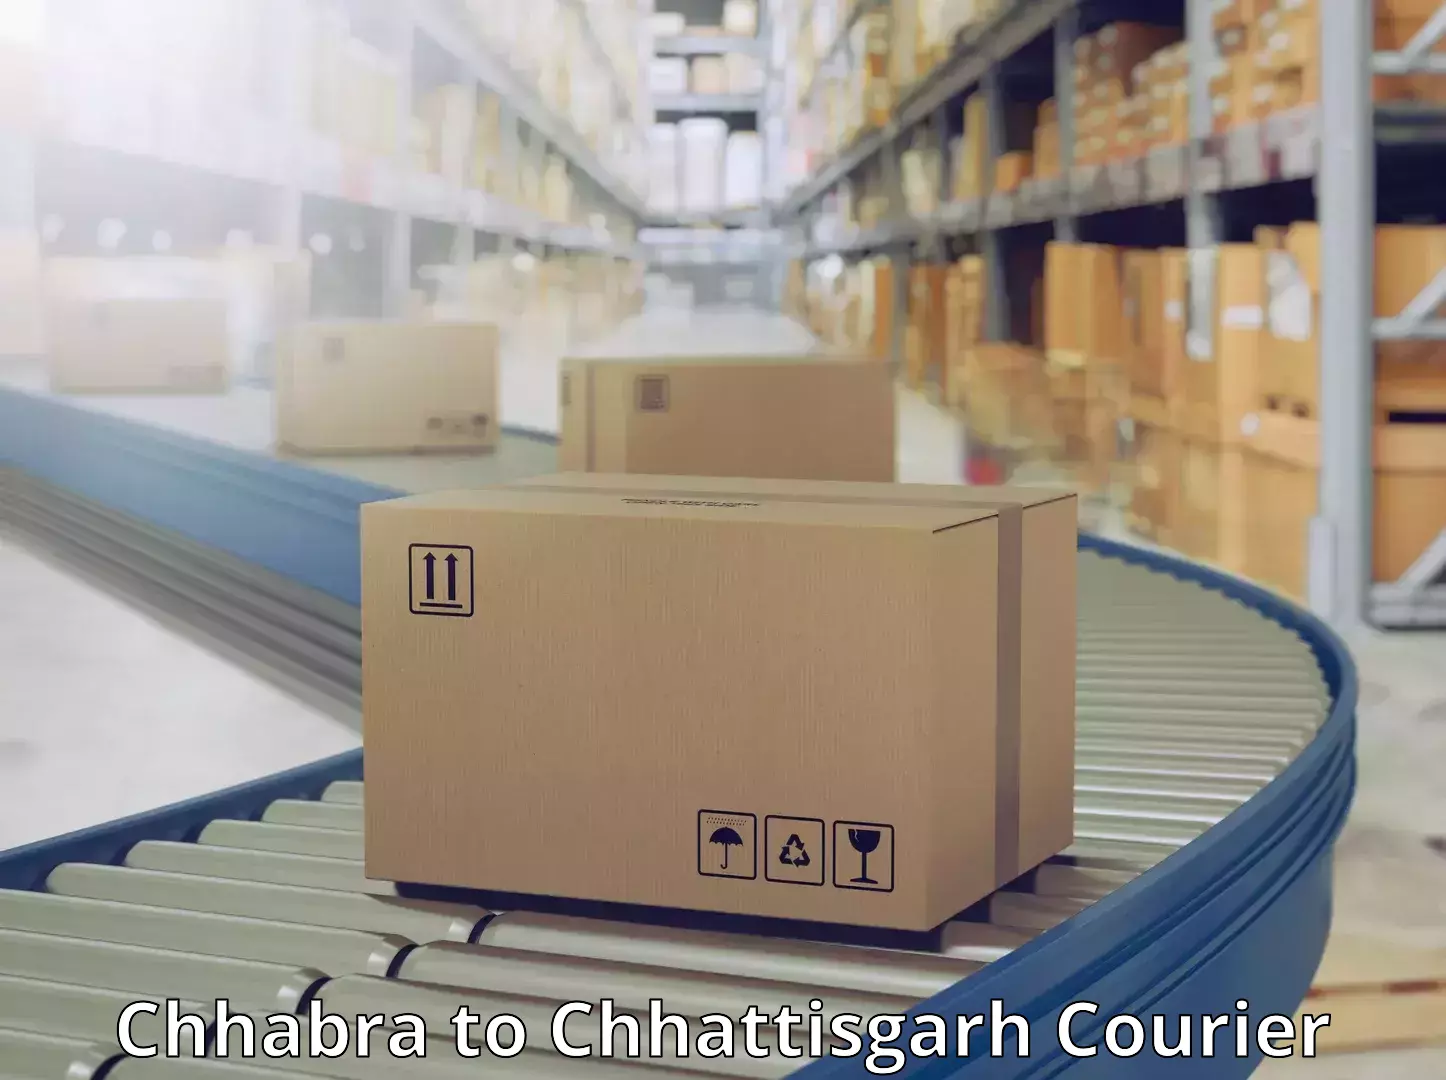 Global logistics network Chhabra to Nagri